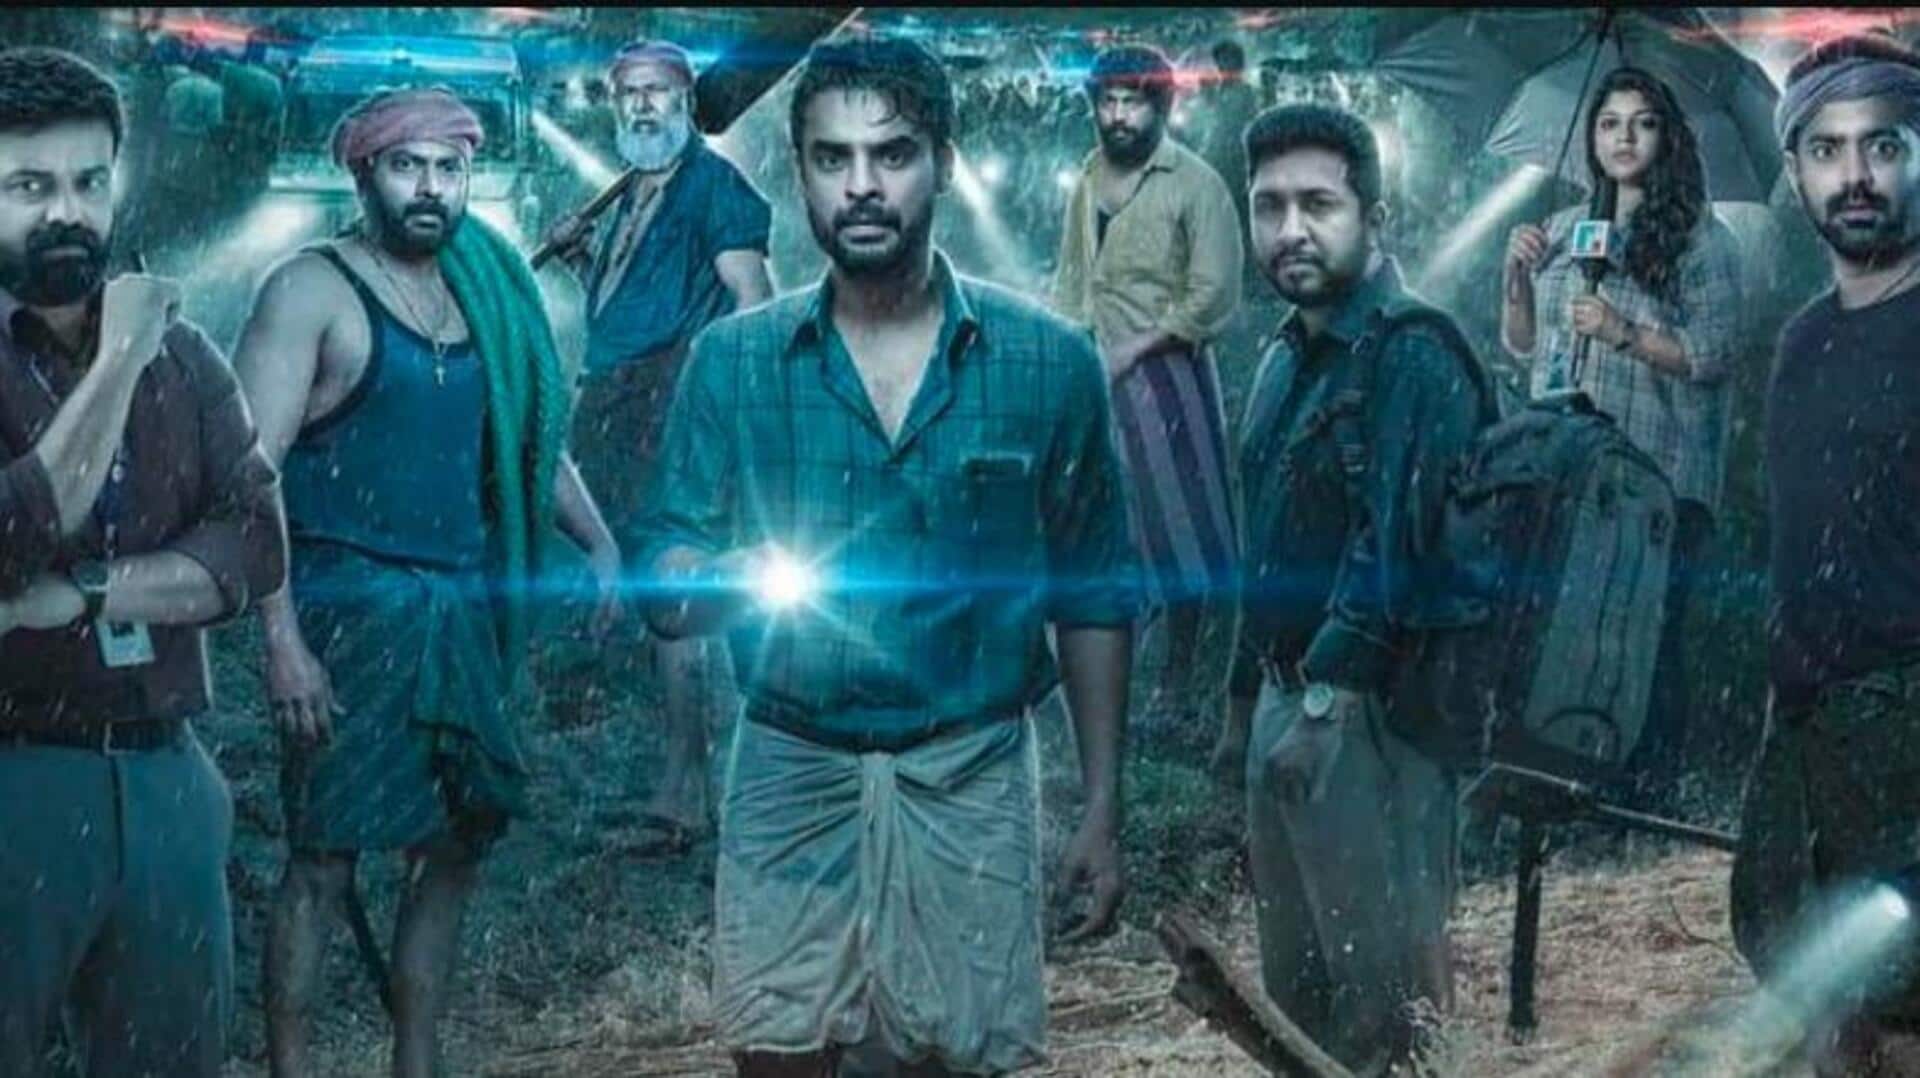 बॉक्स ऑफिस: मलयालम फिल्म '2018' की कमाई जारी, 100 करोड़ रुपये की ओर कारोबार